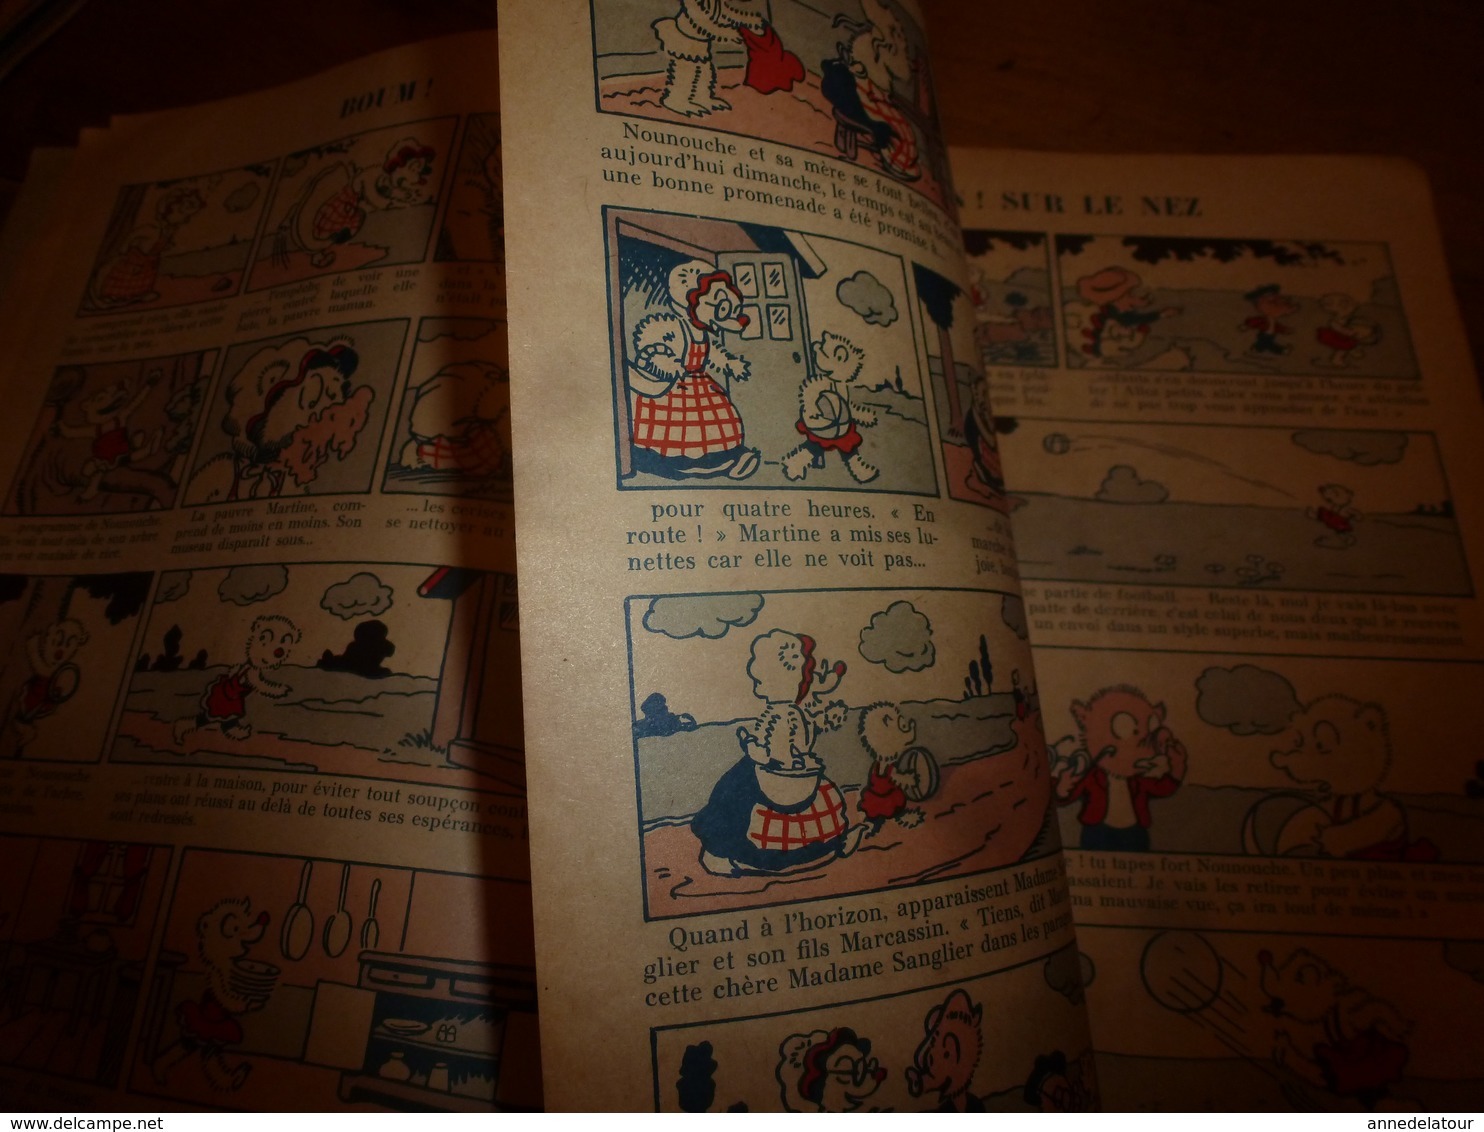 1953 NOUNOUCHE et sa mère,   texte et dessins de DURST